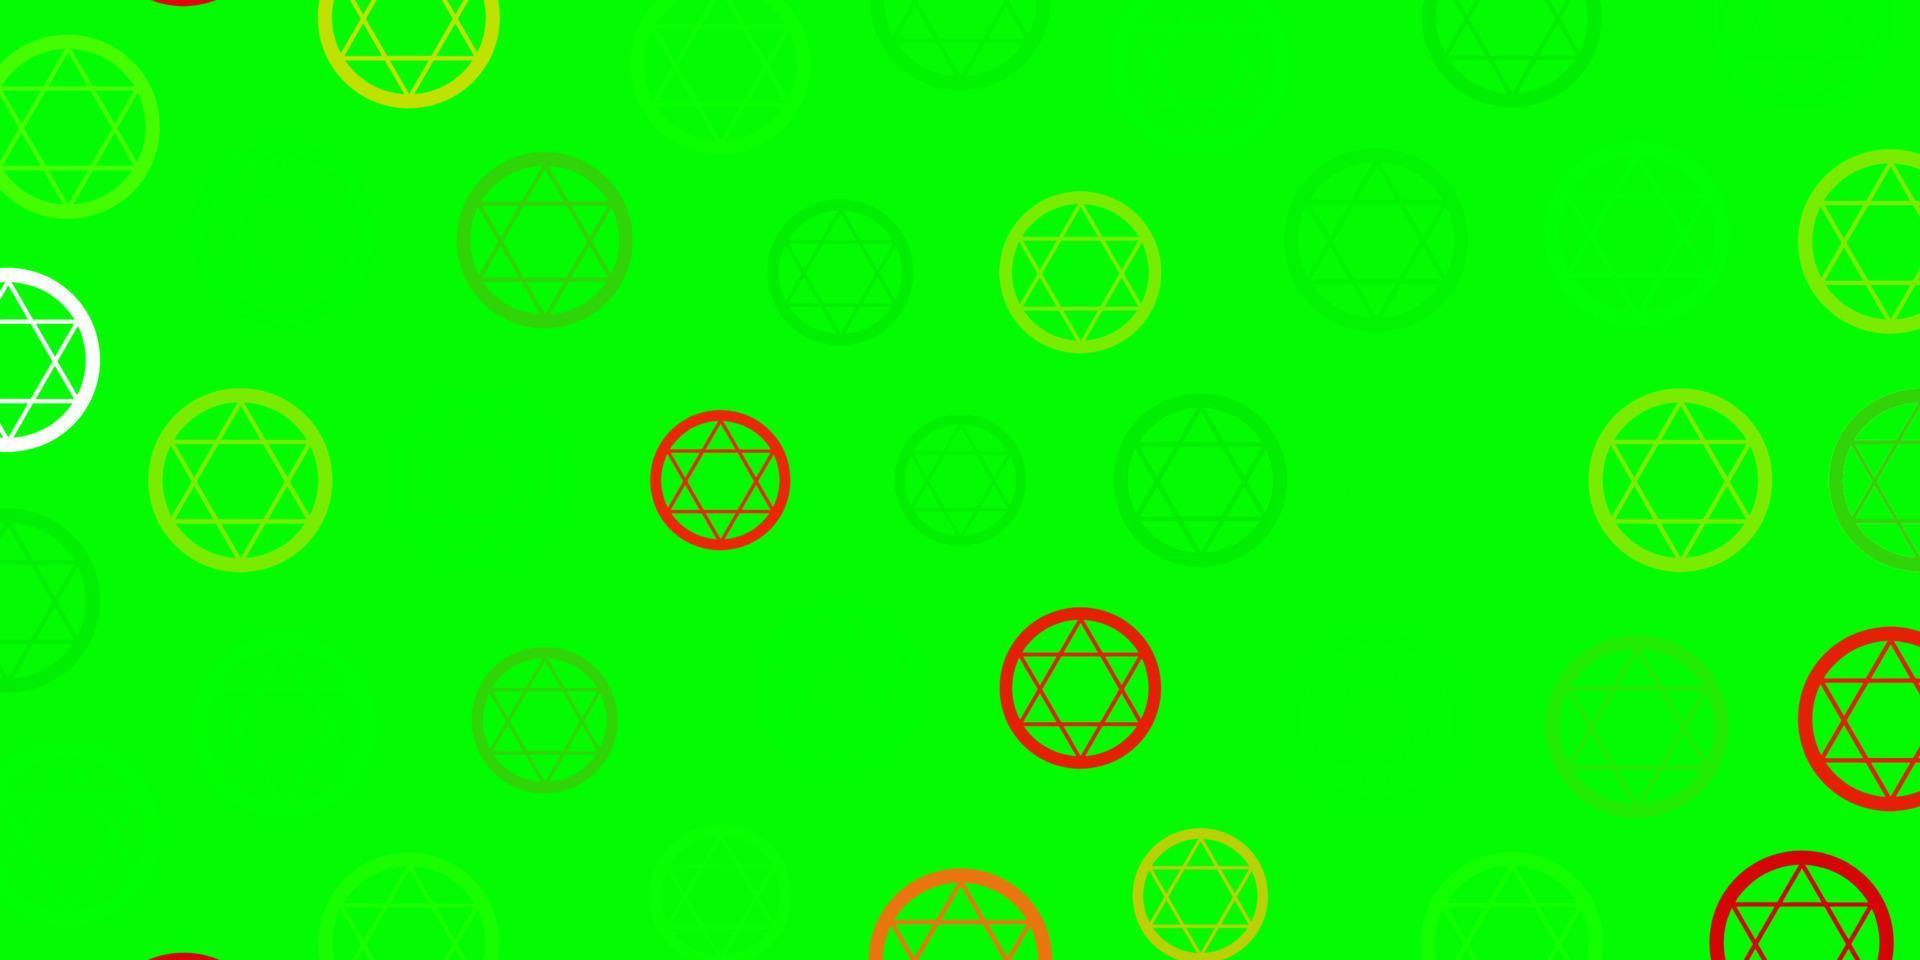 ljusgrön, röd vektor bakgrund med mysteriesymboler.